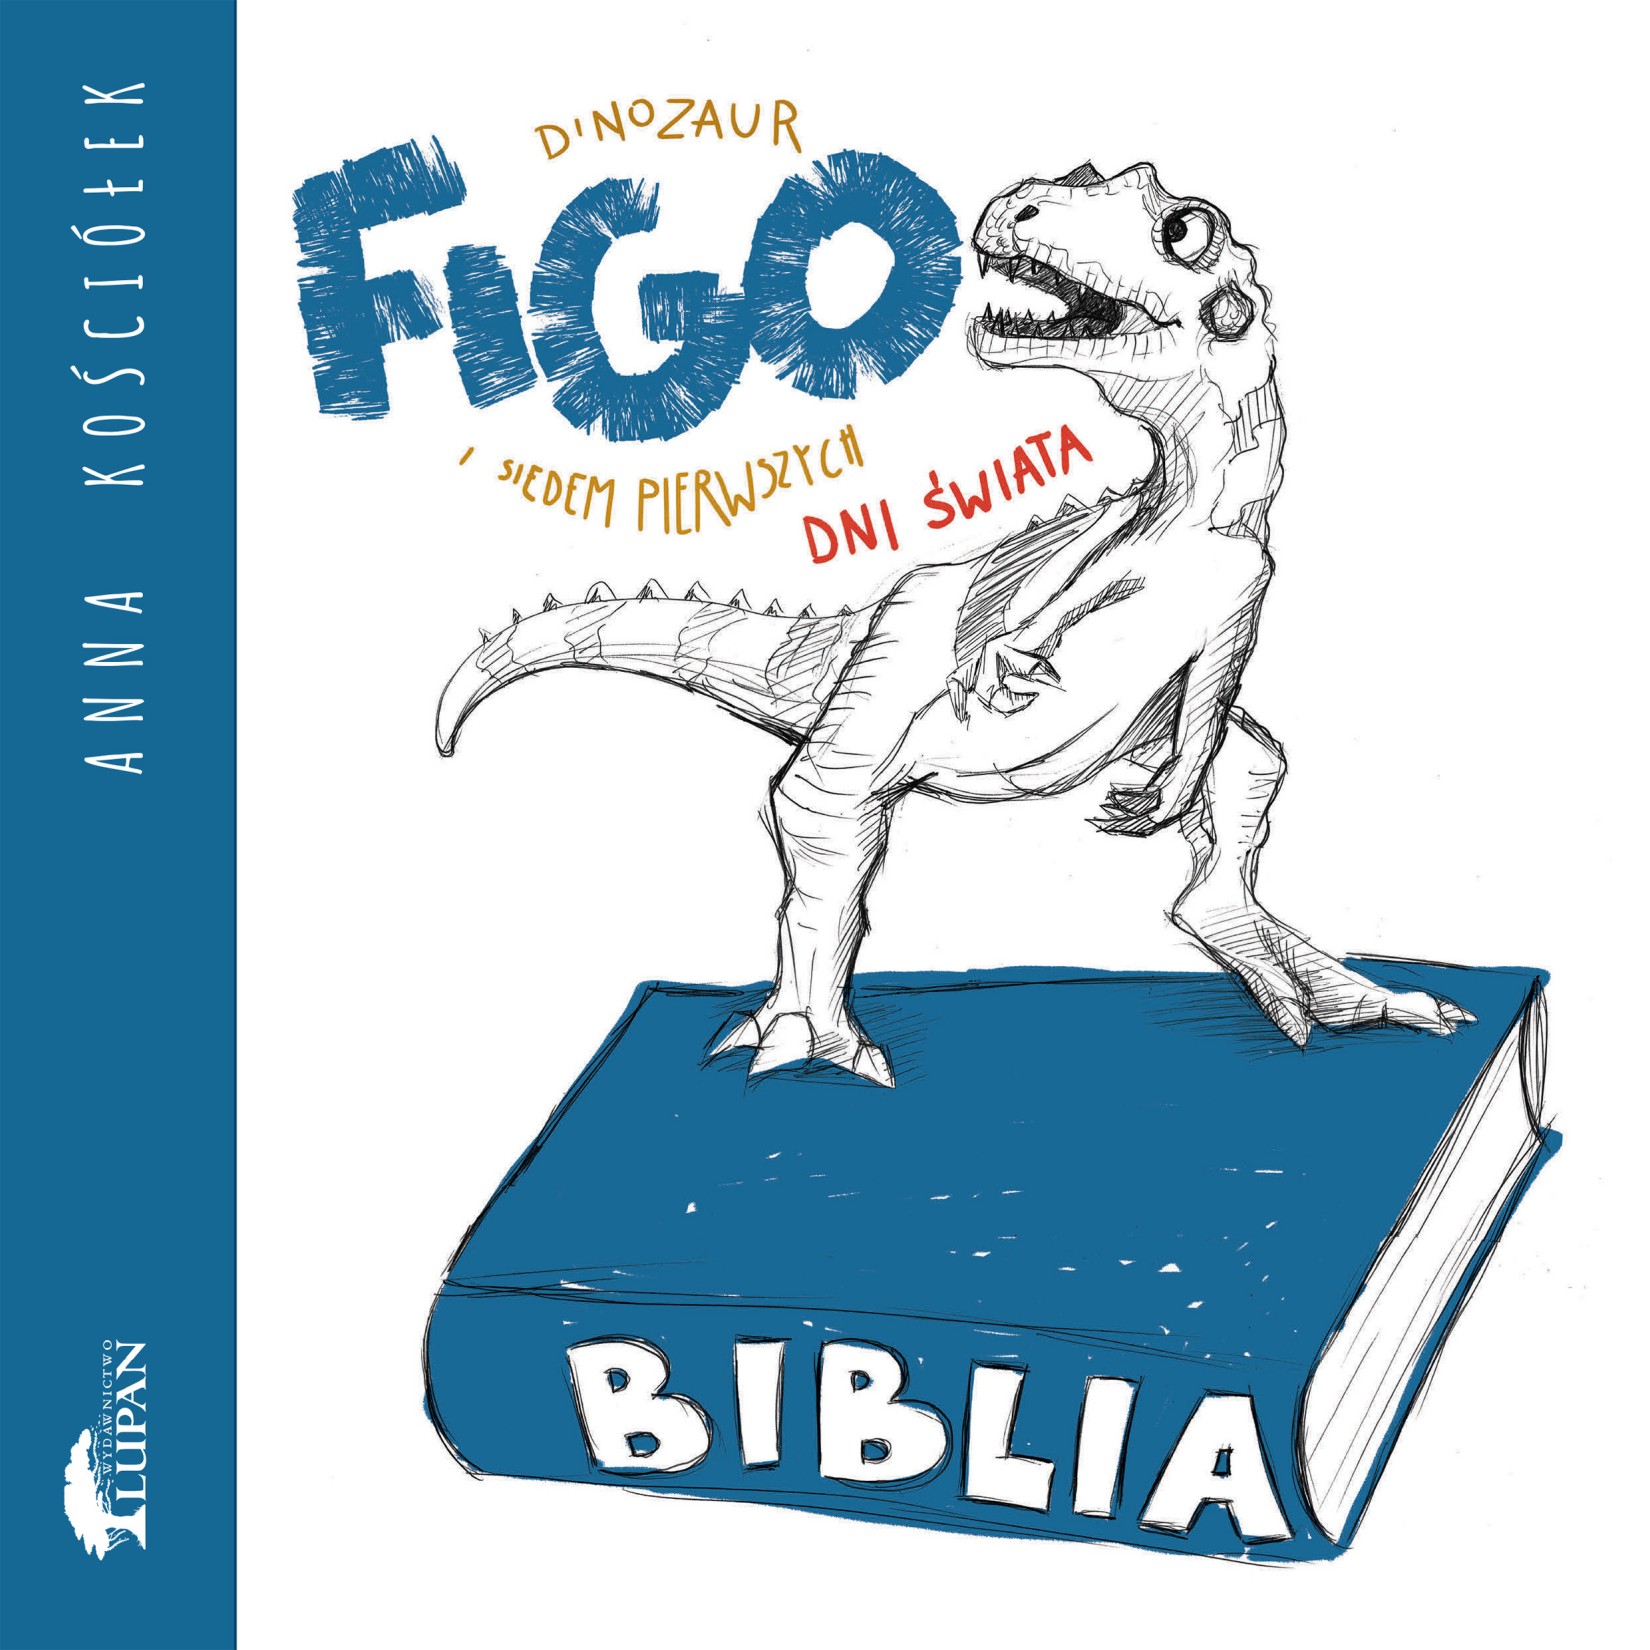 Okładka:Dinozaur FIGO i siedem pierwszych dni świata 